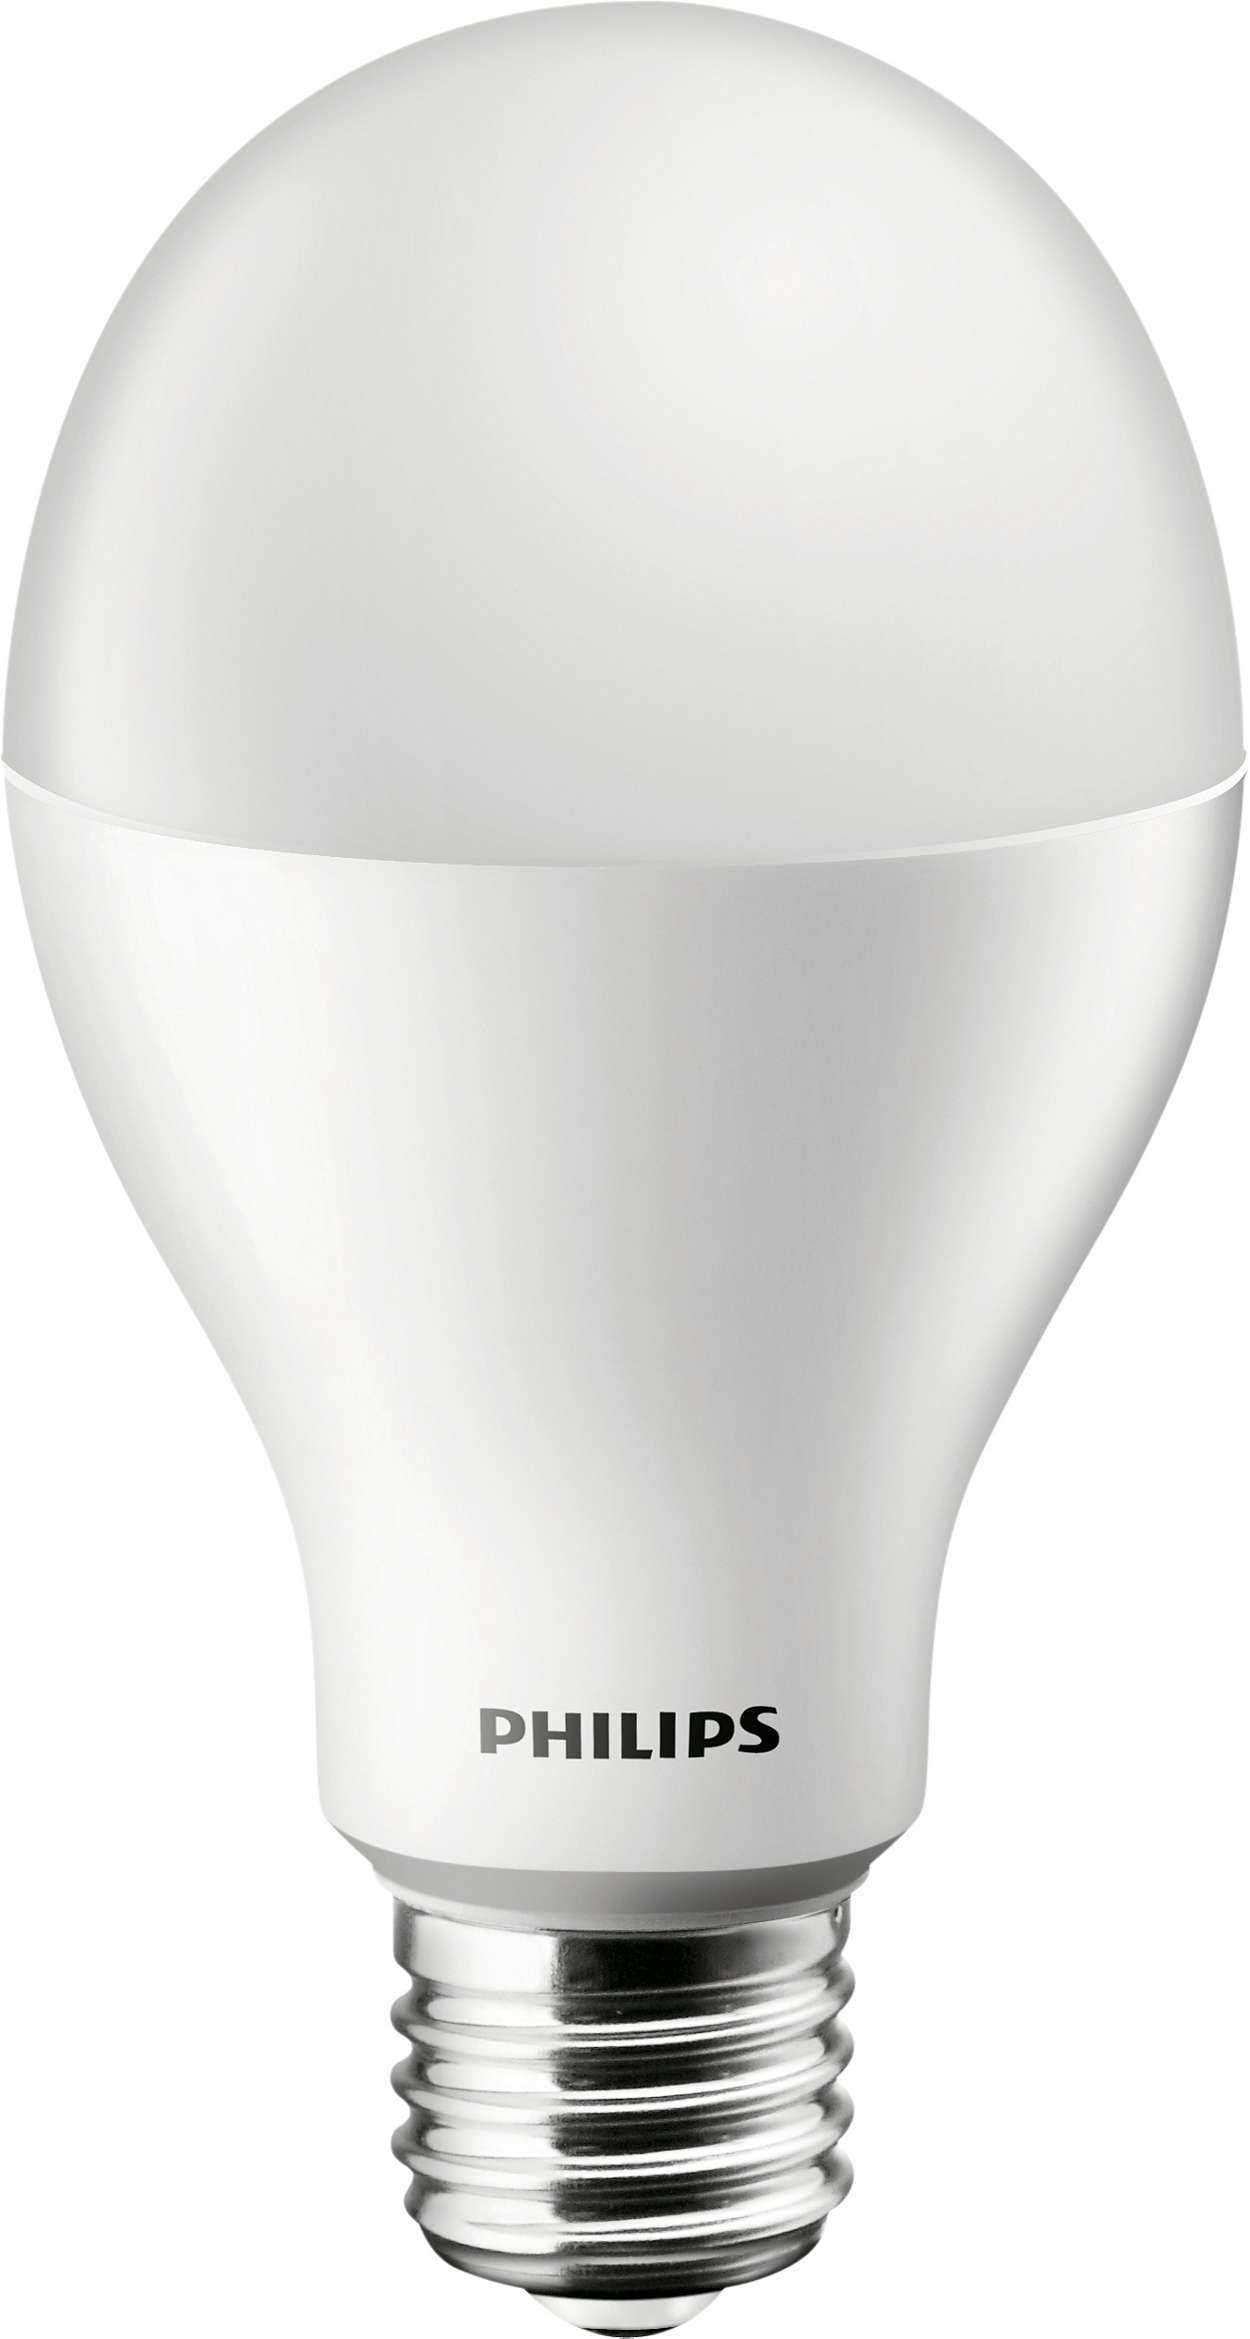 La solution d'ampoules LEDbulb économique